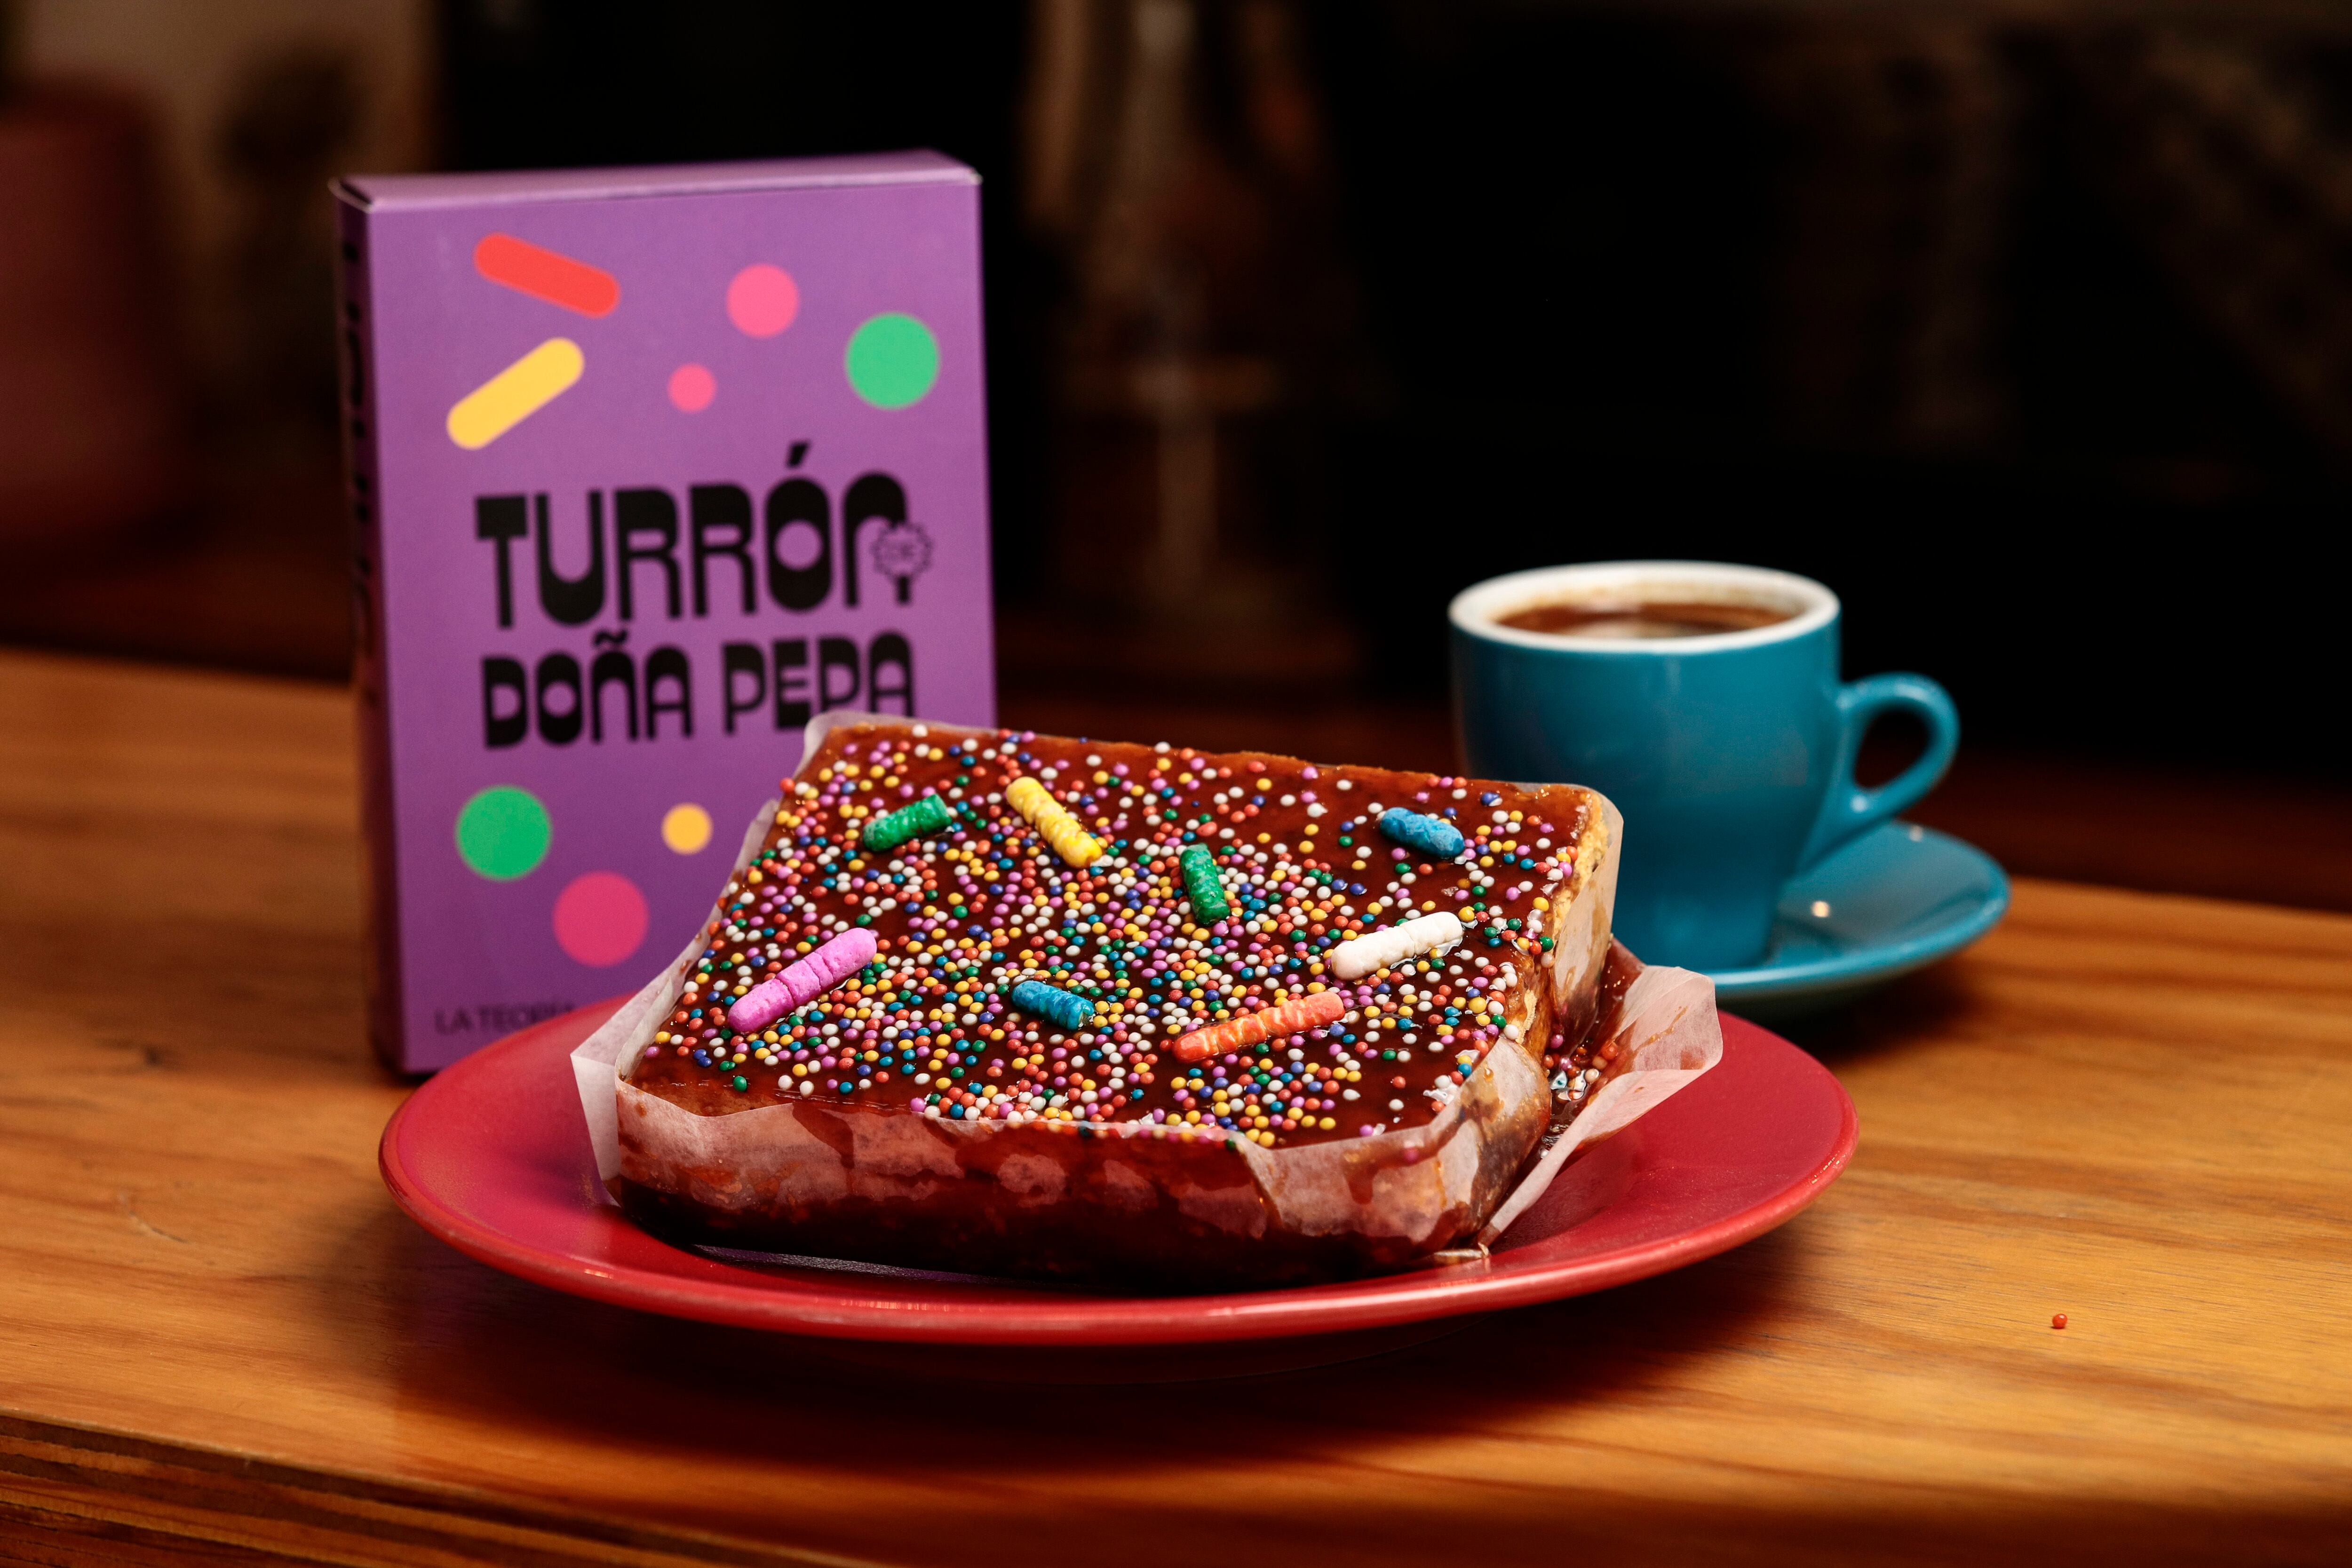 La singular caja que lleva al turrón de Doña Pepa forma parte de toda la identidad visual de la cafetería.